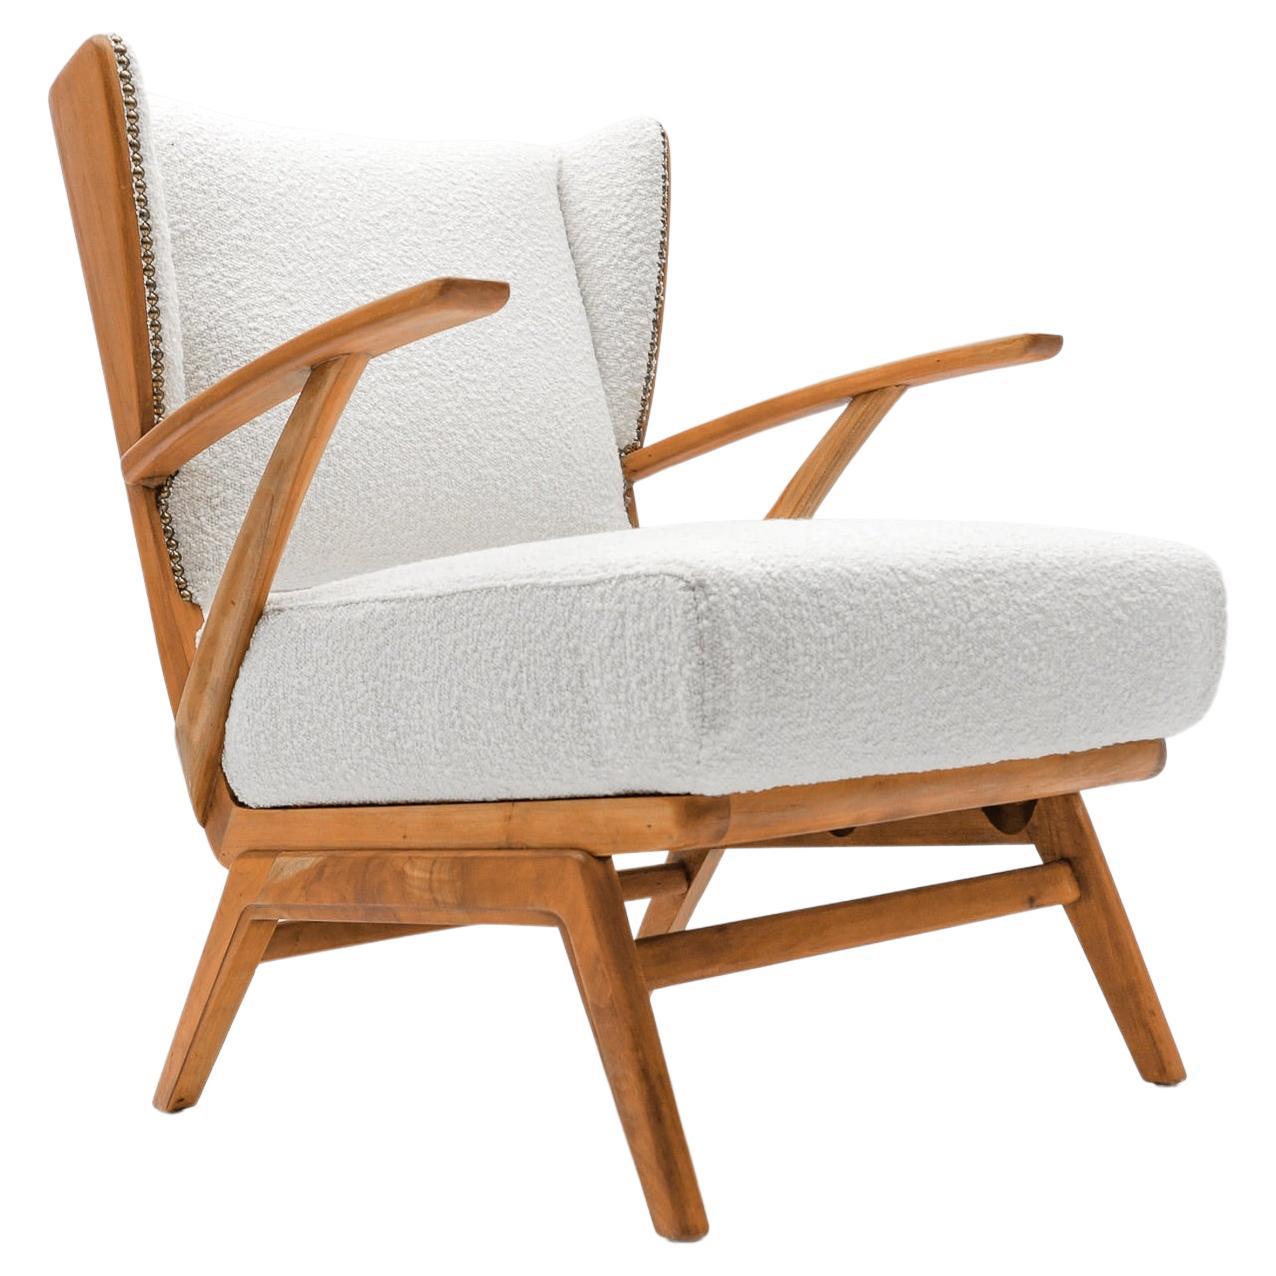 Weißer Sessel aus Boucle-Stoff und Holz mit Ohrensessel, Italien, 1950er Jahre